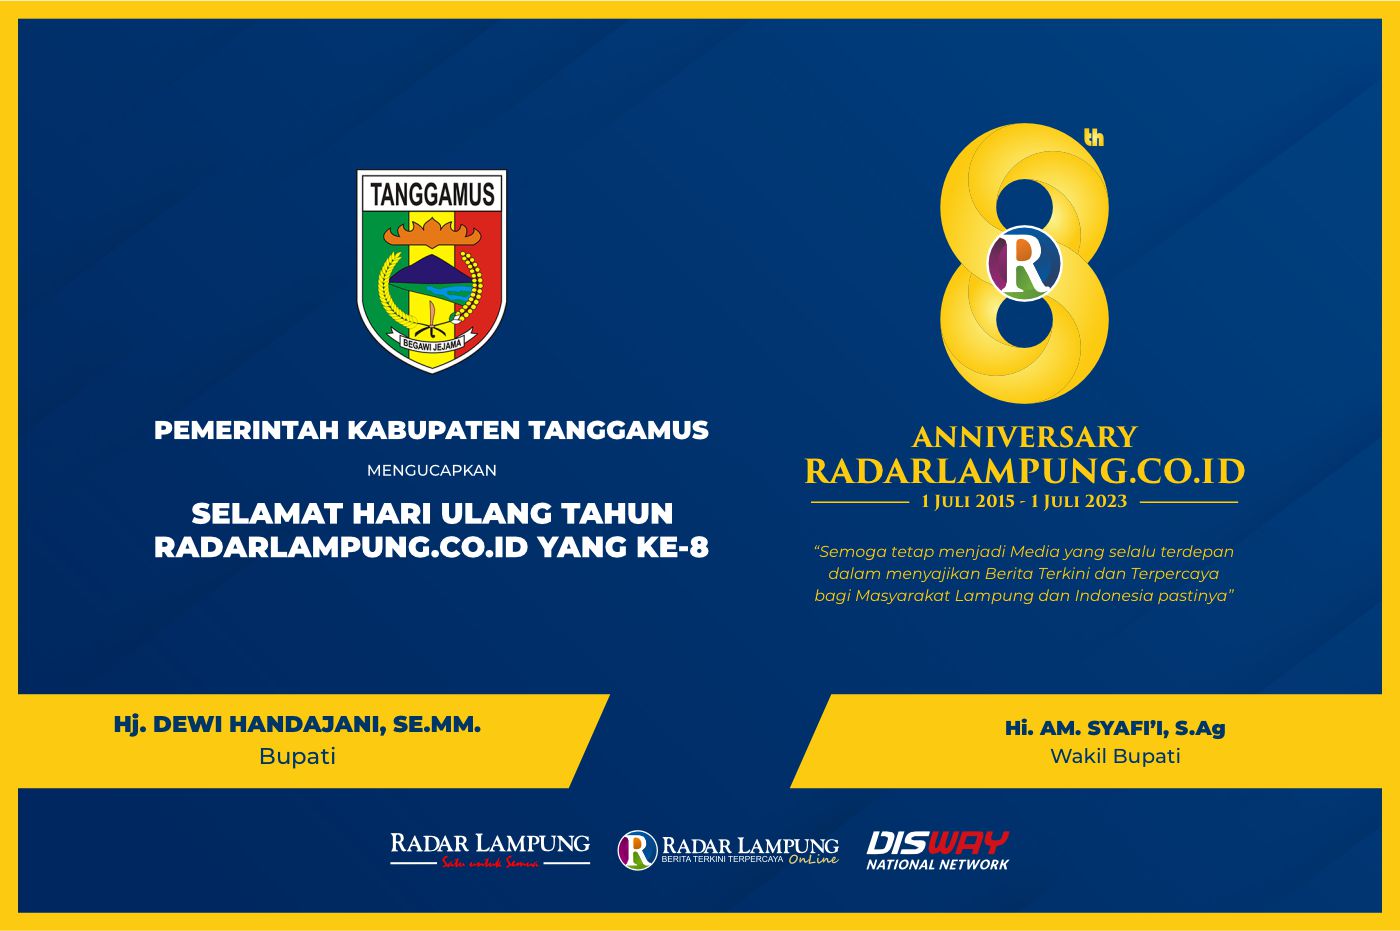 Pemerintah Kabupaten Tanggamus: Selamat Milad Radar Lampung Online ke-8